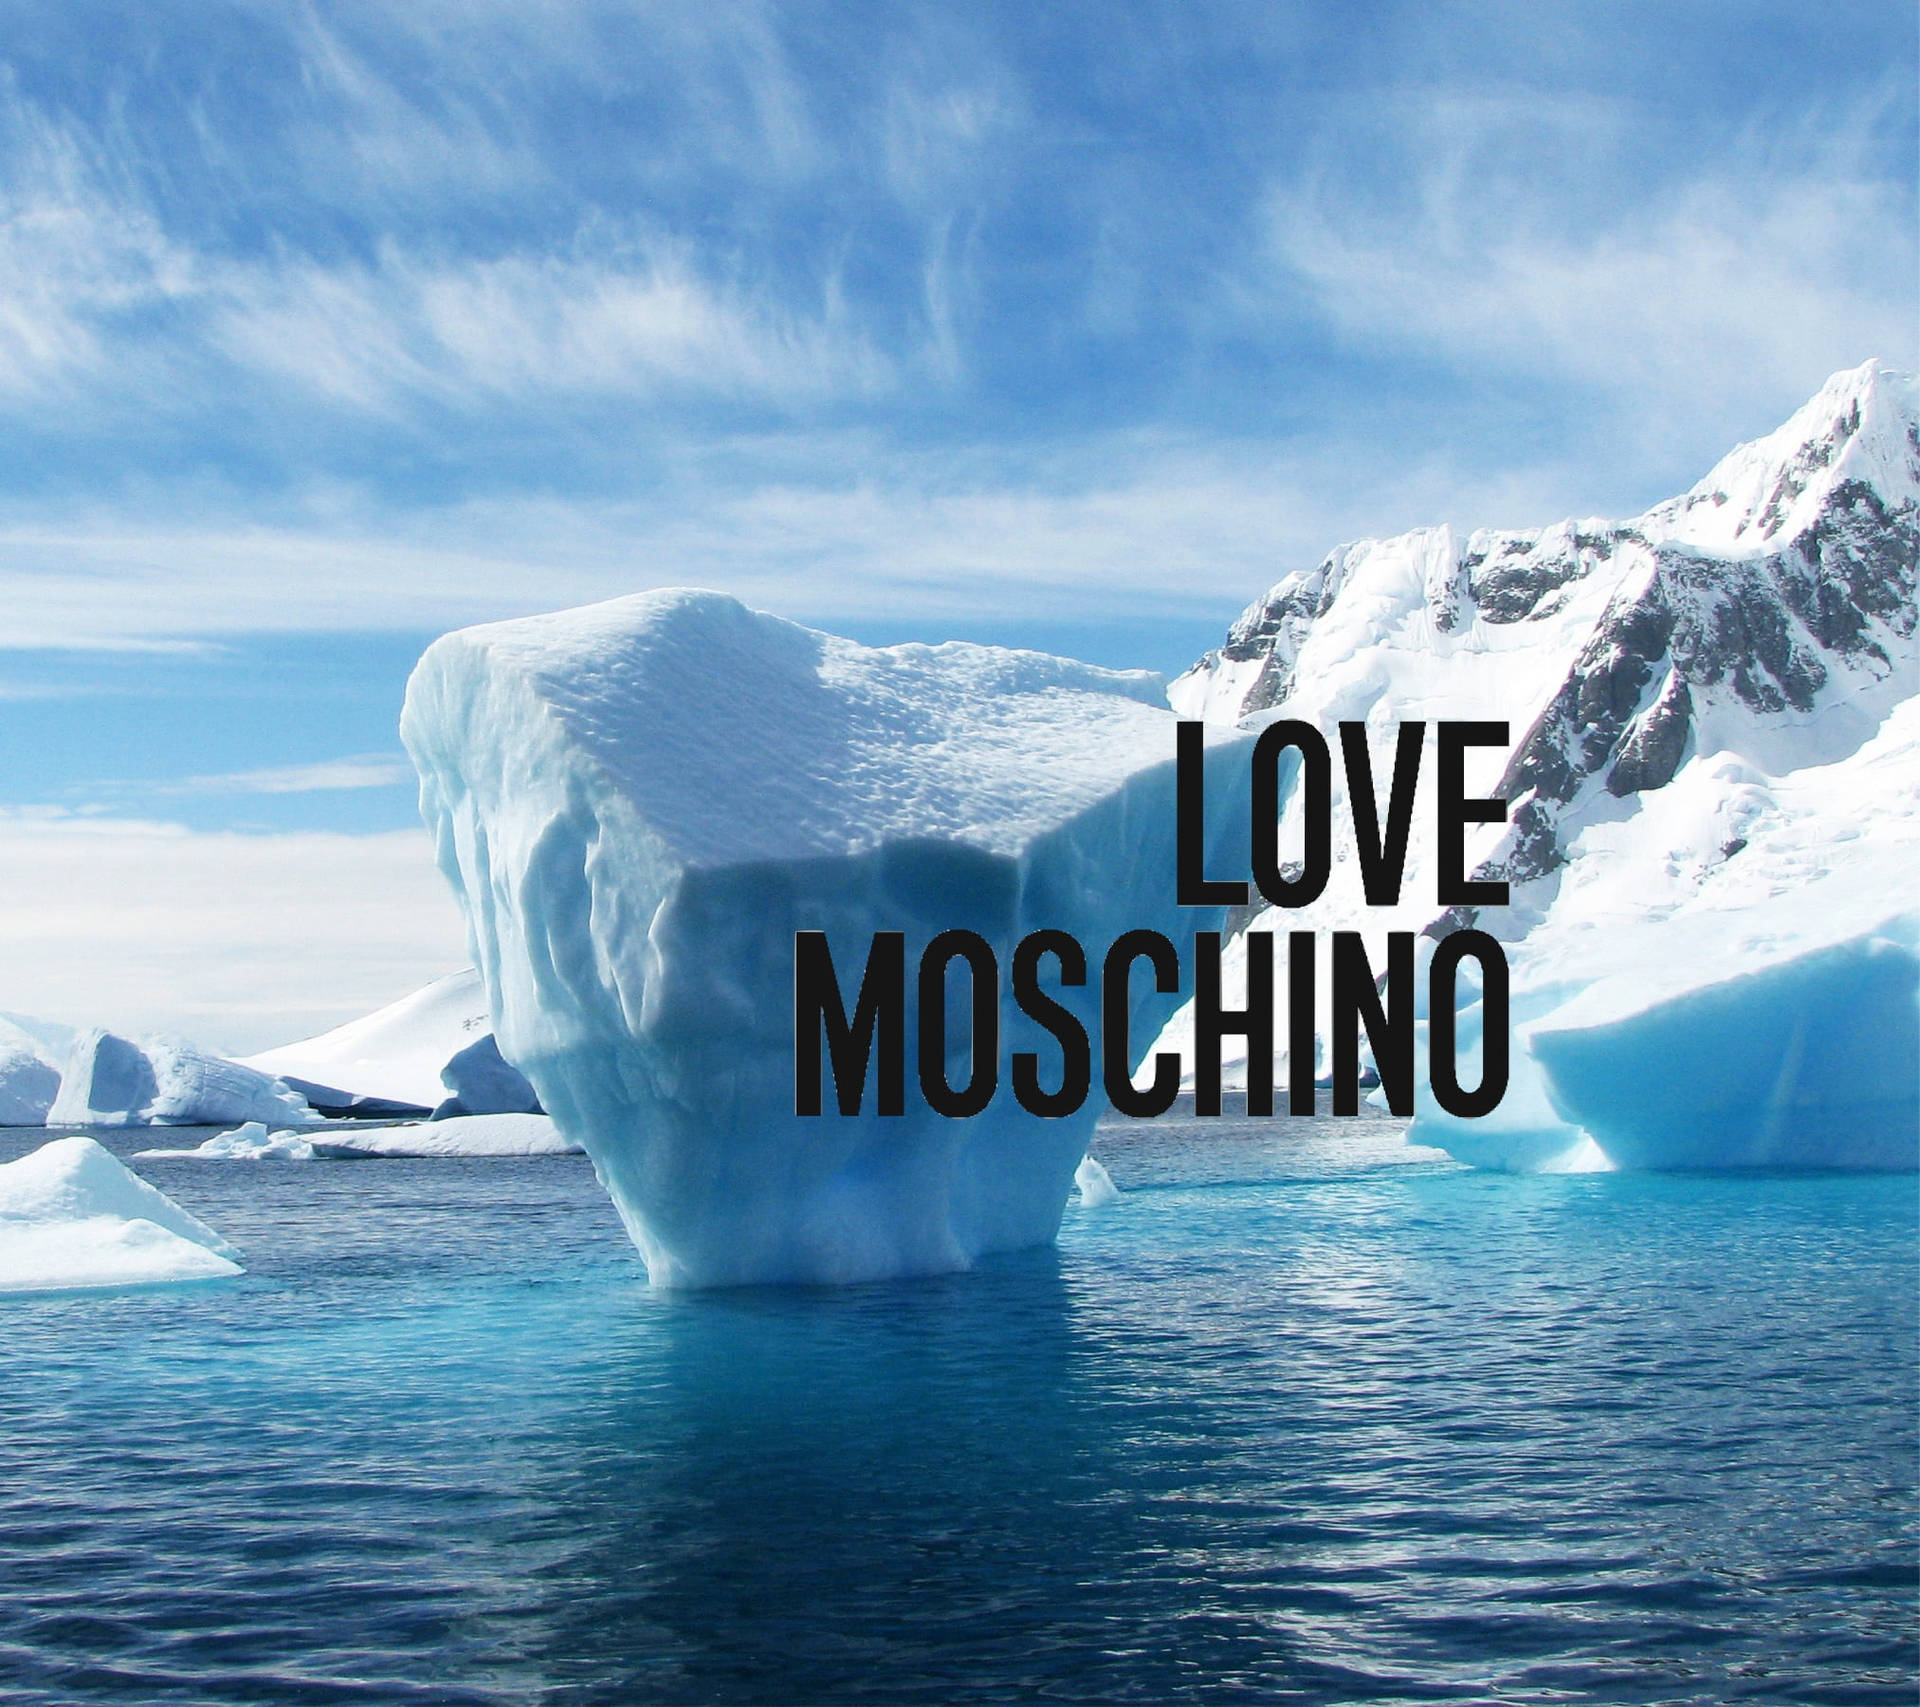 Love Moschino Iceberg Background